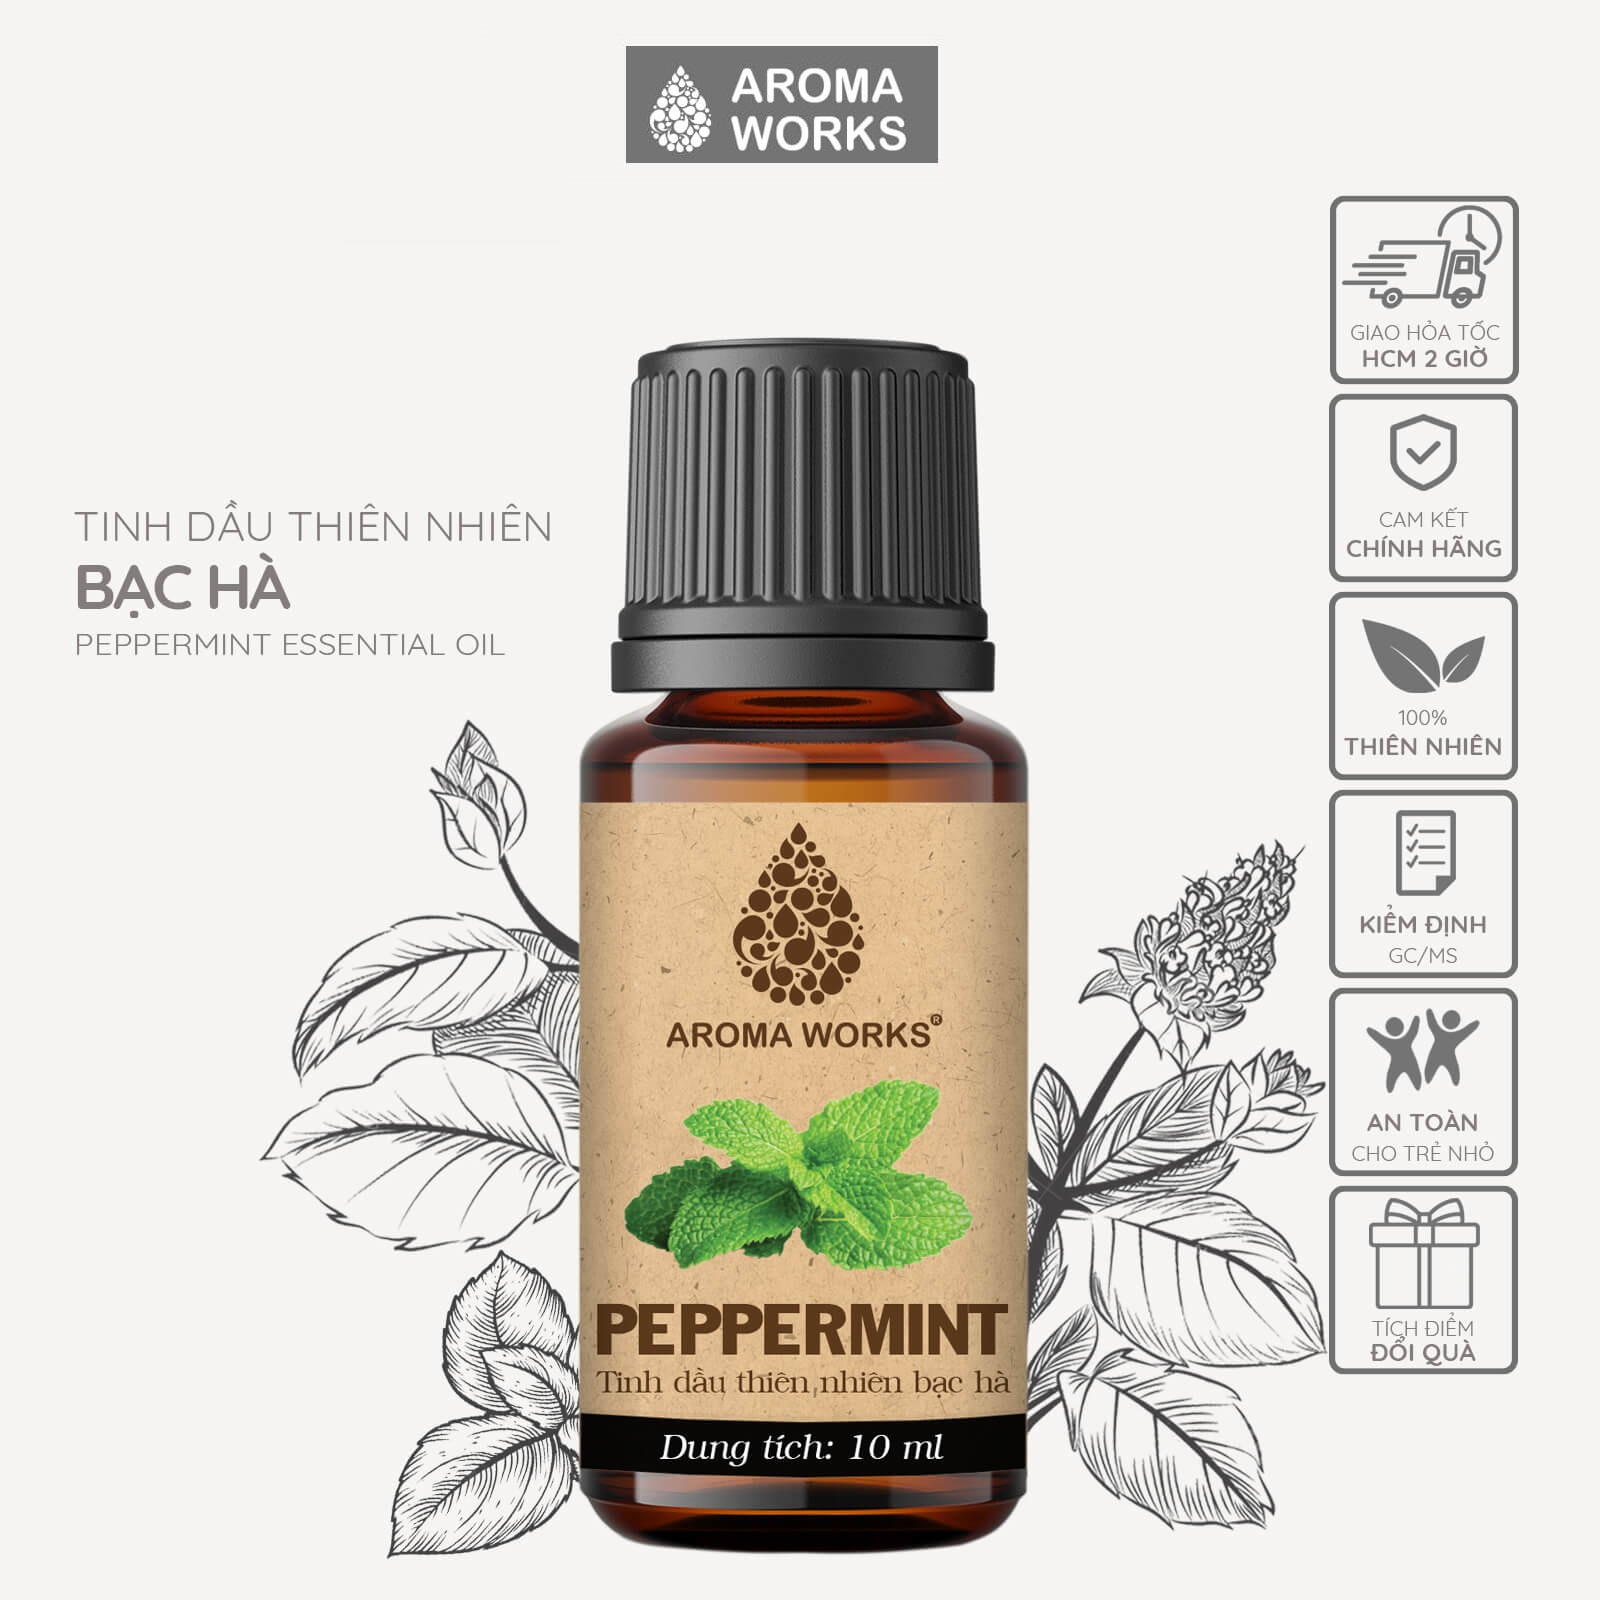 Tinh dầu Bạc Hà Aroma Works Peppermint xông phòng, khử mùi, thanh lọc không khí, thoải mái, tỉnh táo